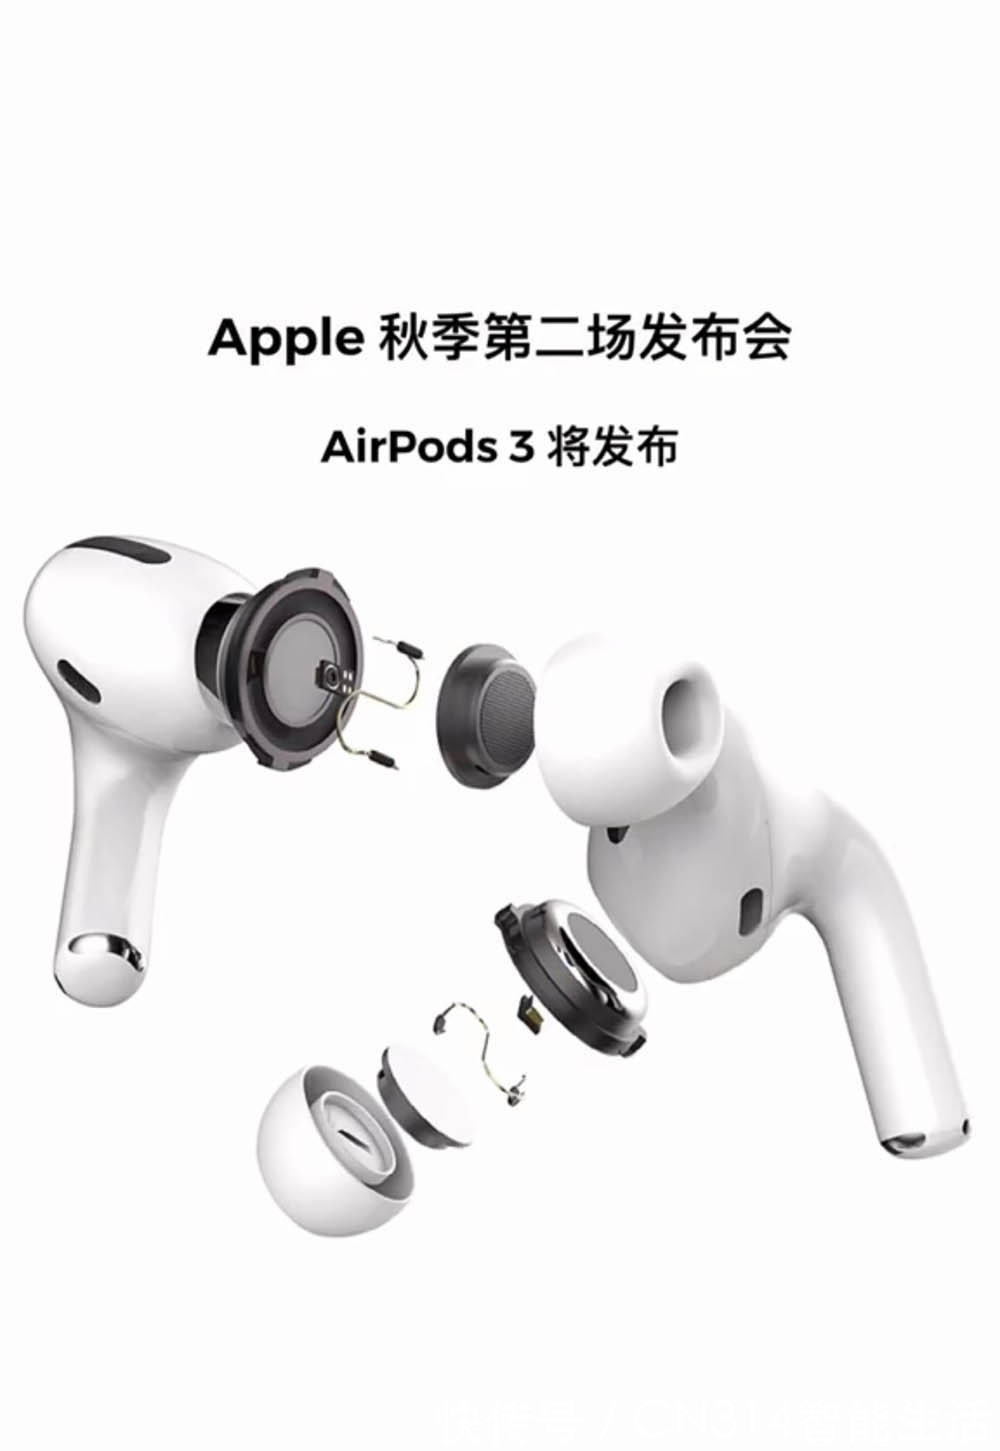 ds 3|曝苹果10月12日开发布会 新款AirPods耳机上架官网